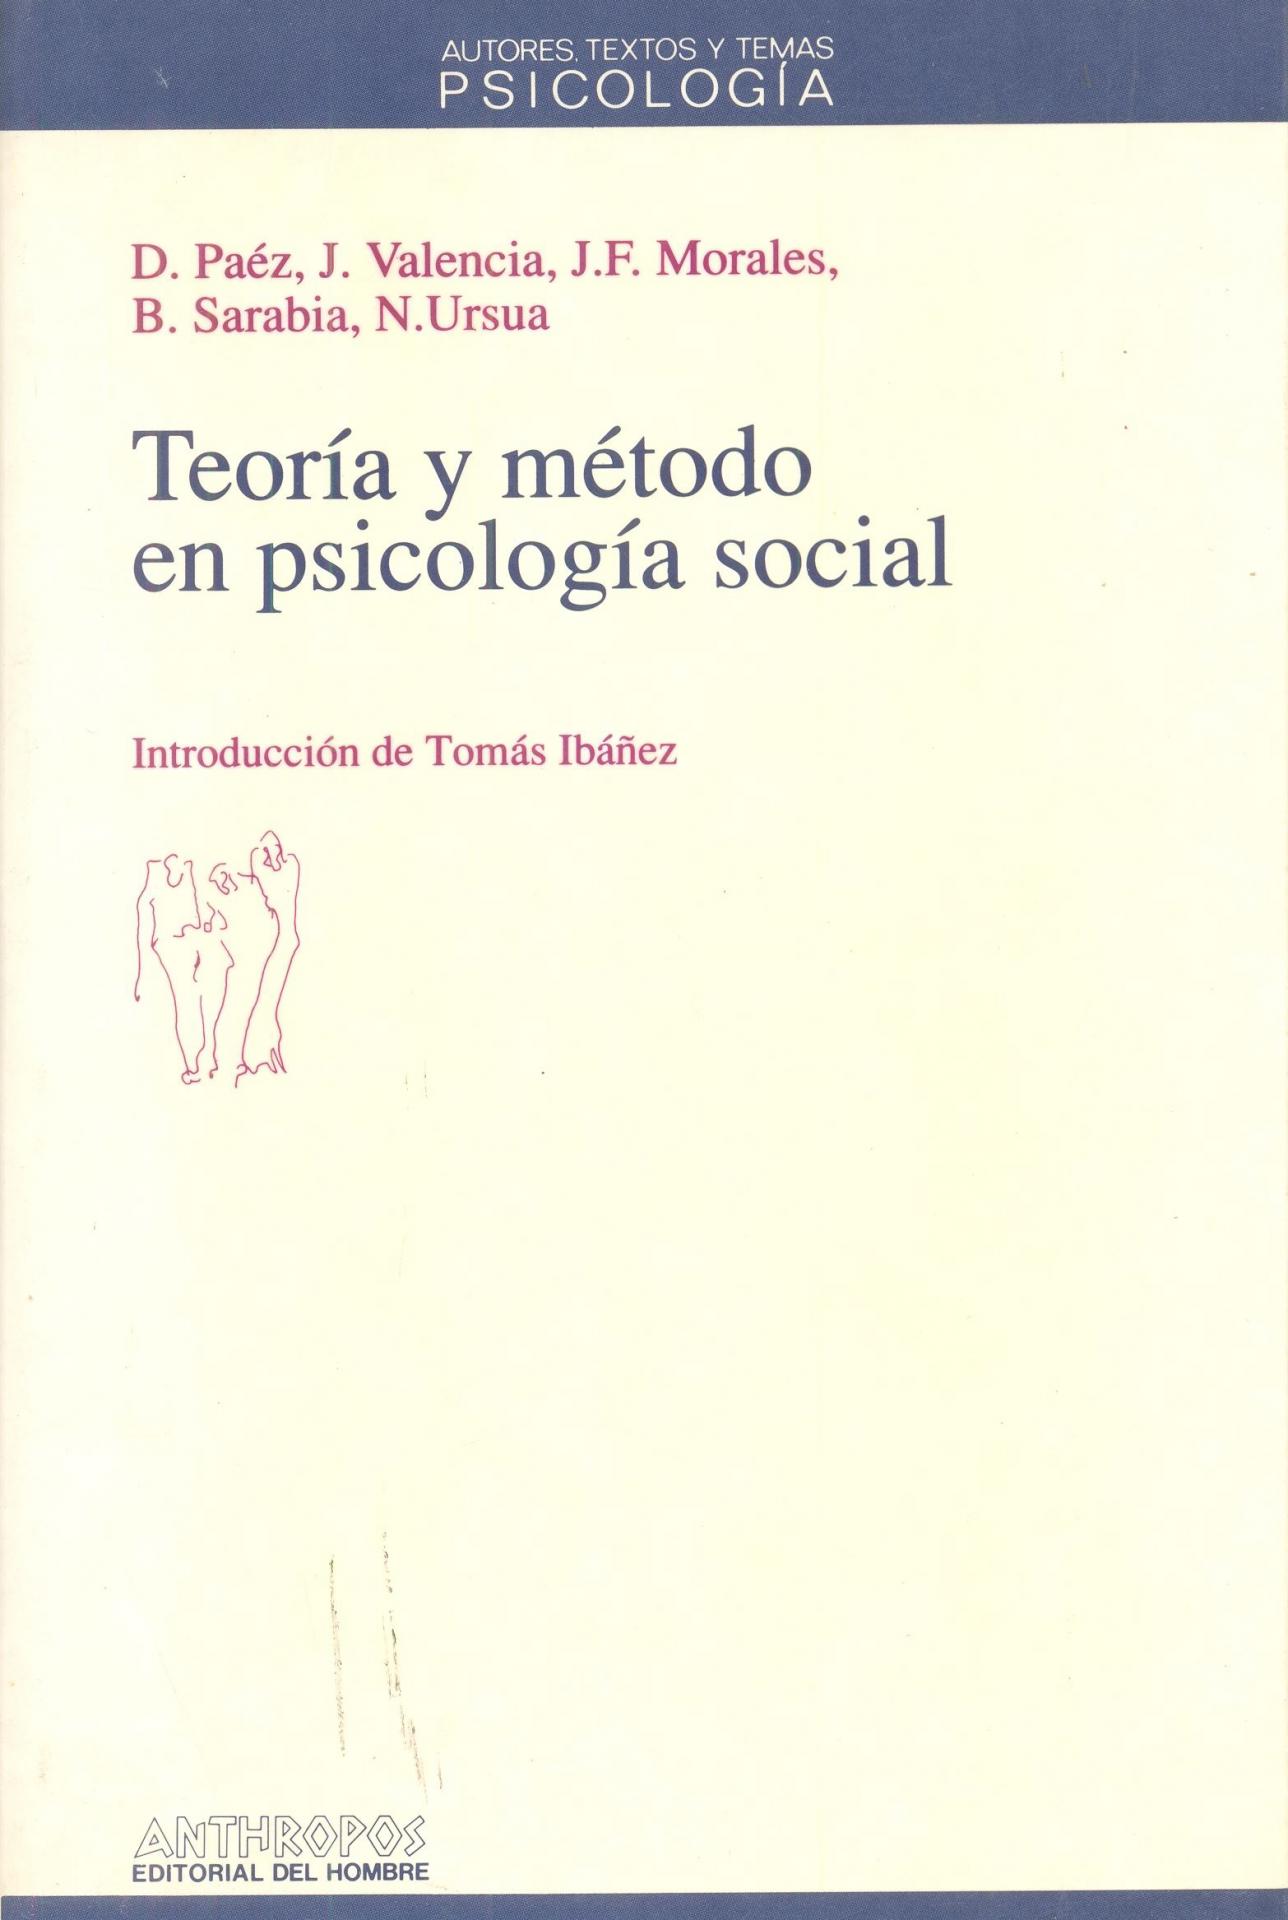 TEORÍA Y MÉTODO EN PSICOLOGÍA SOCIAL. Paéz, J.; Valencia, J.; Morales, F.; Sarabia, N.Ursua.